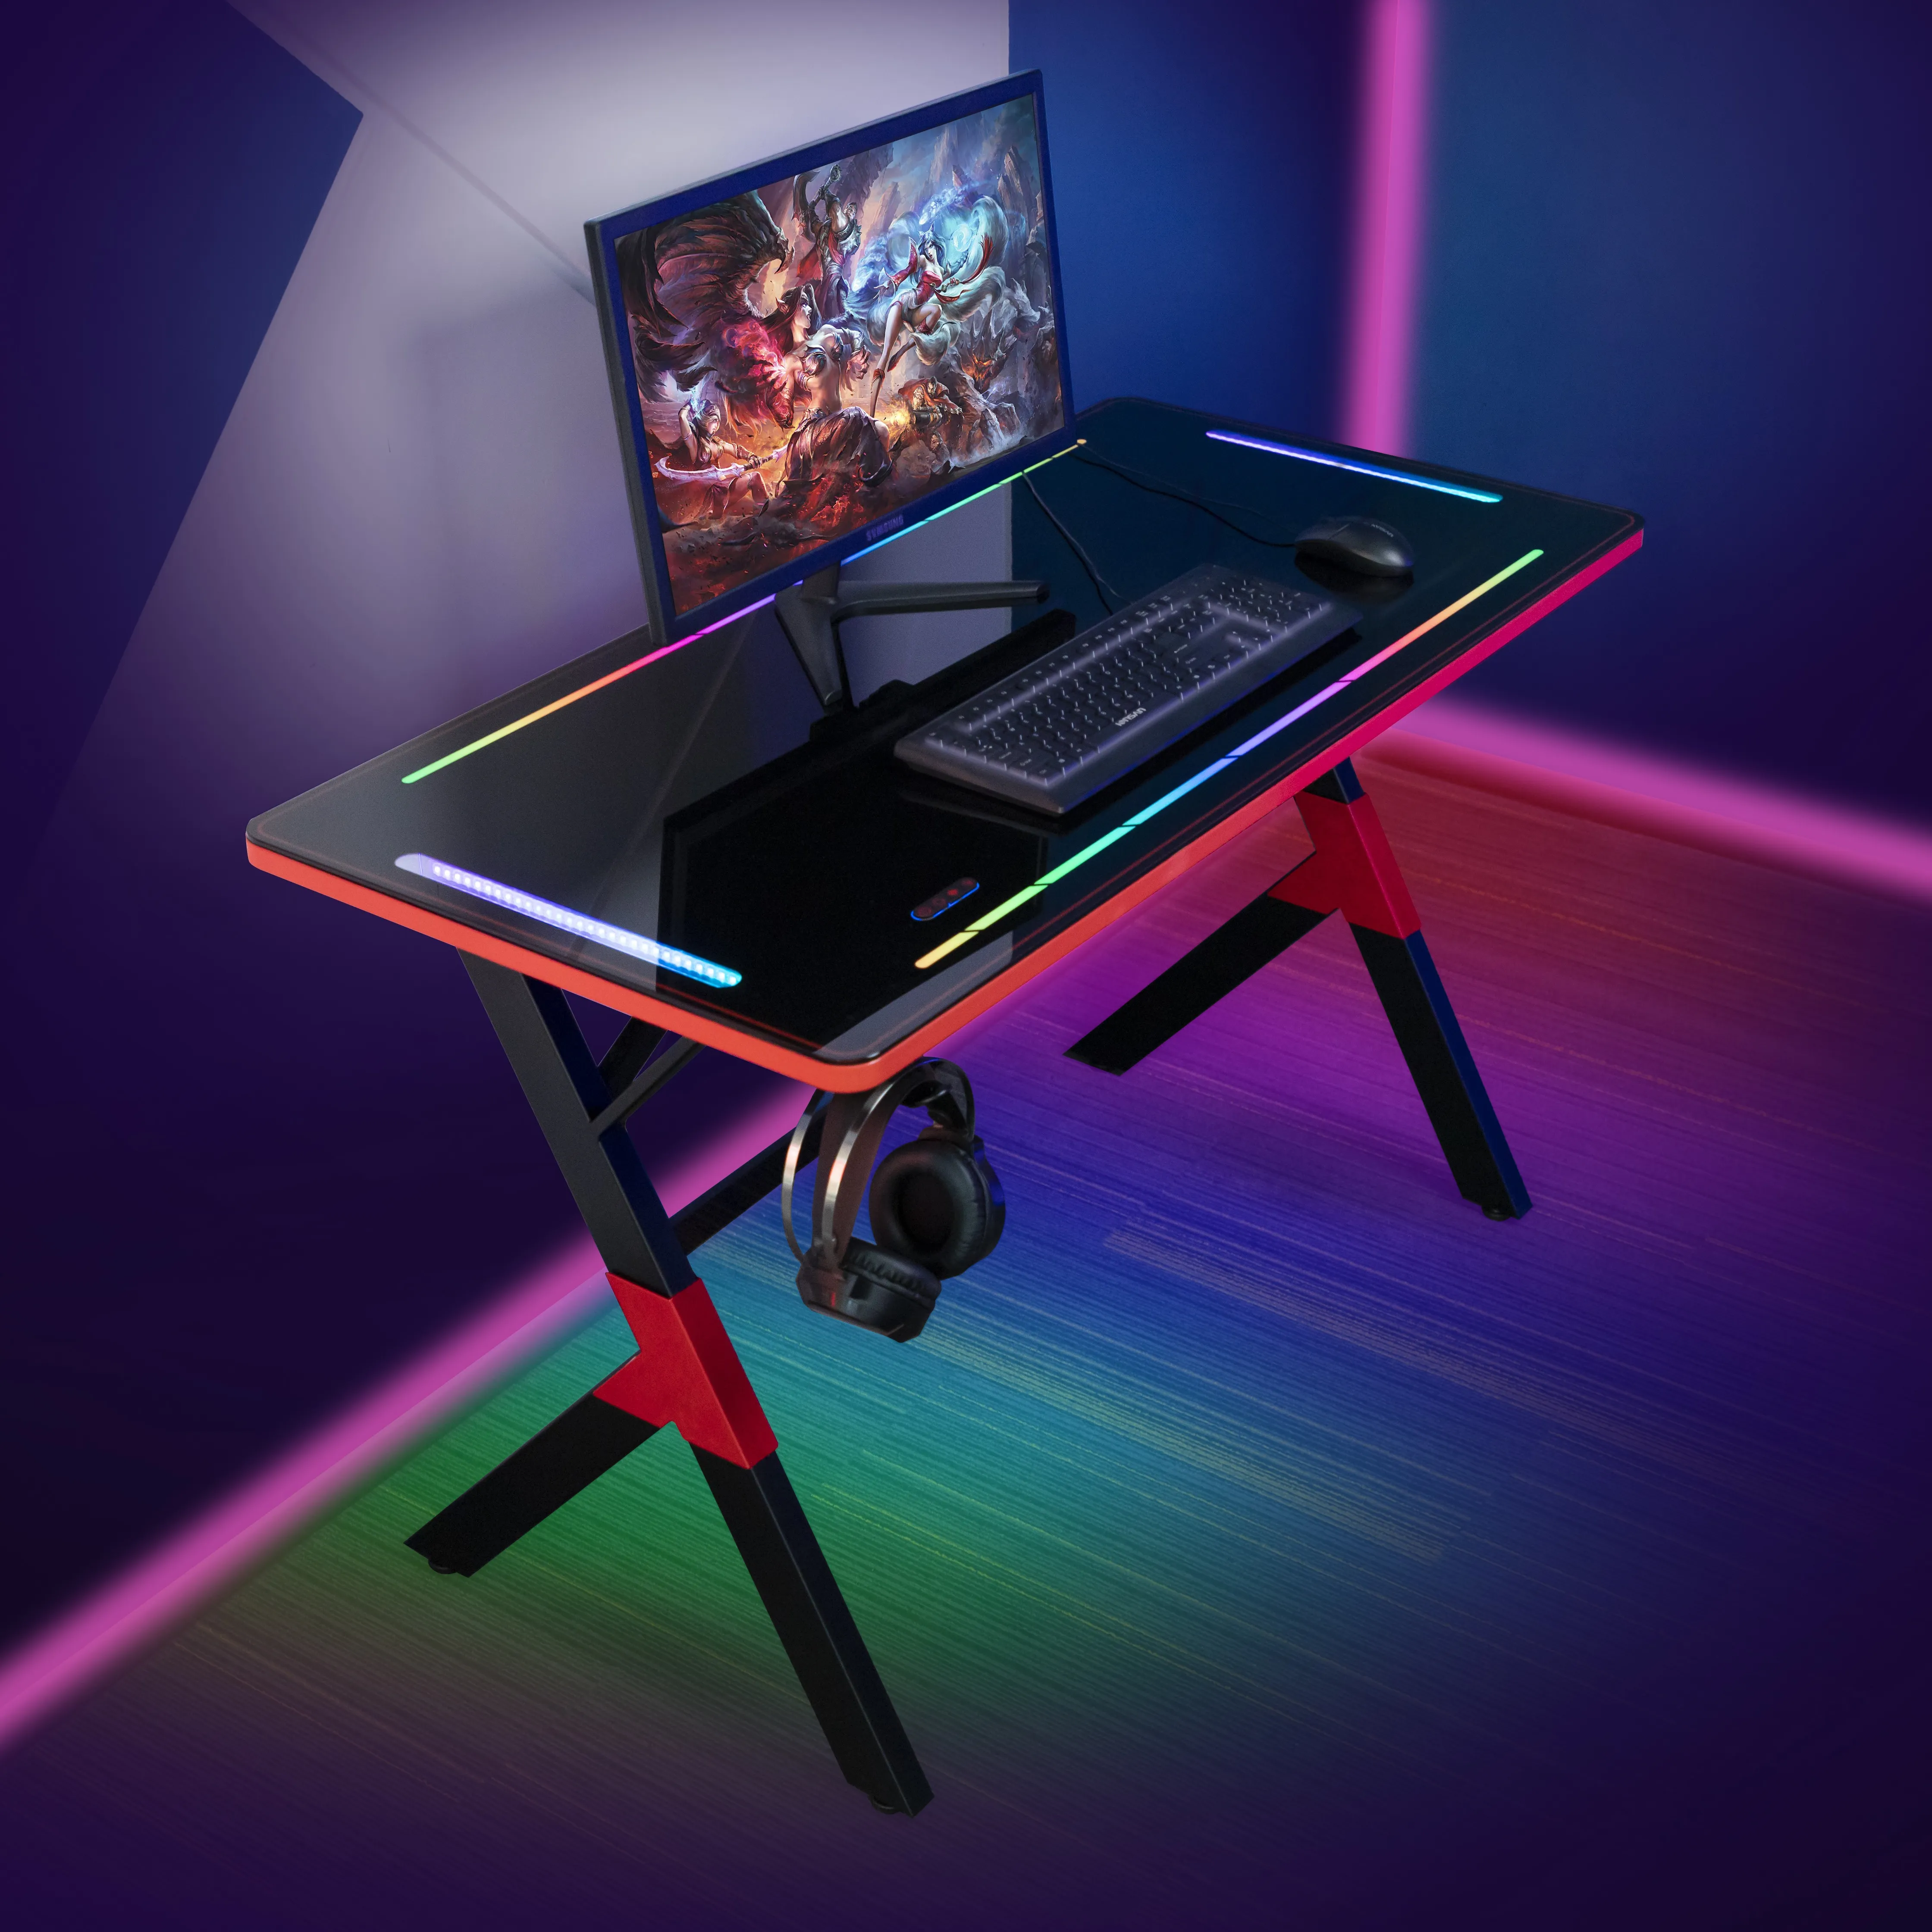 โต๊ะทํางาน สมาร์ท RGB light office โต๊ะยกแบบปรับได้ โต๊ะเล่นเกมไฟฟ้า โต๊ะทันสมัย